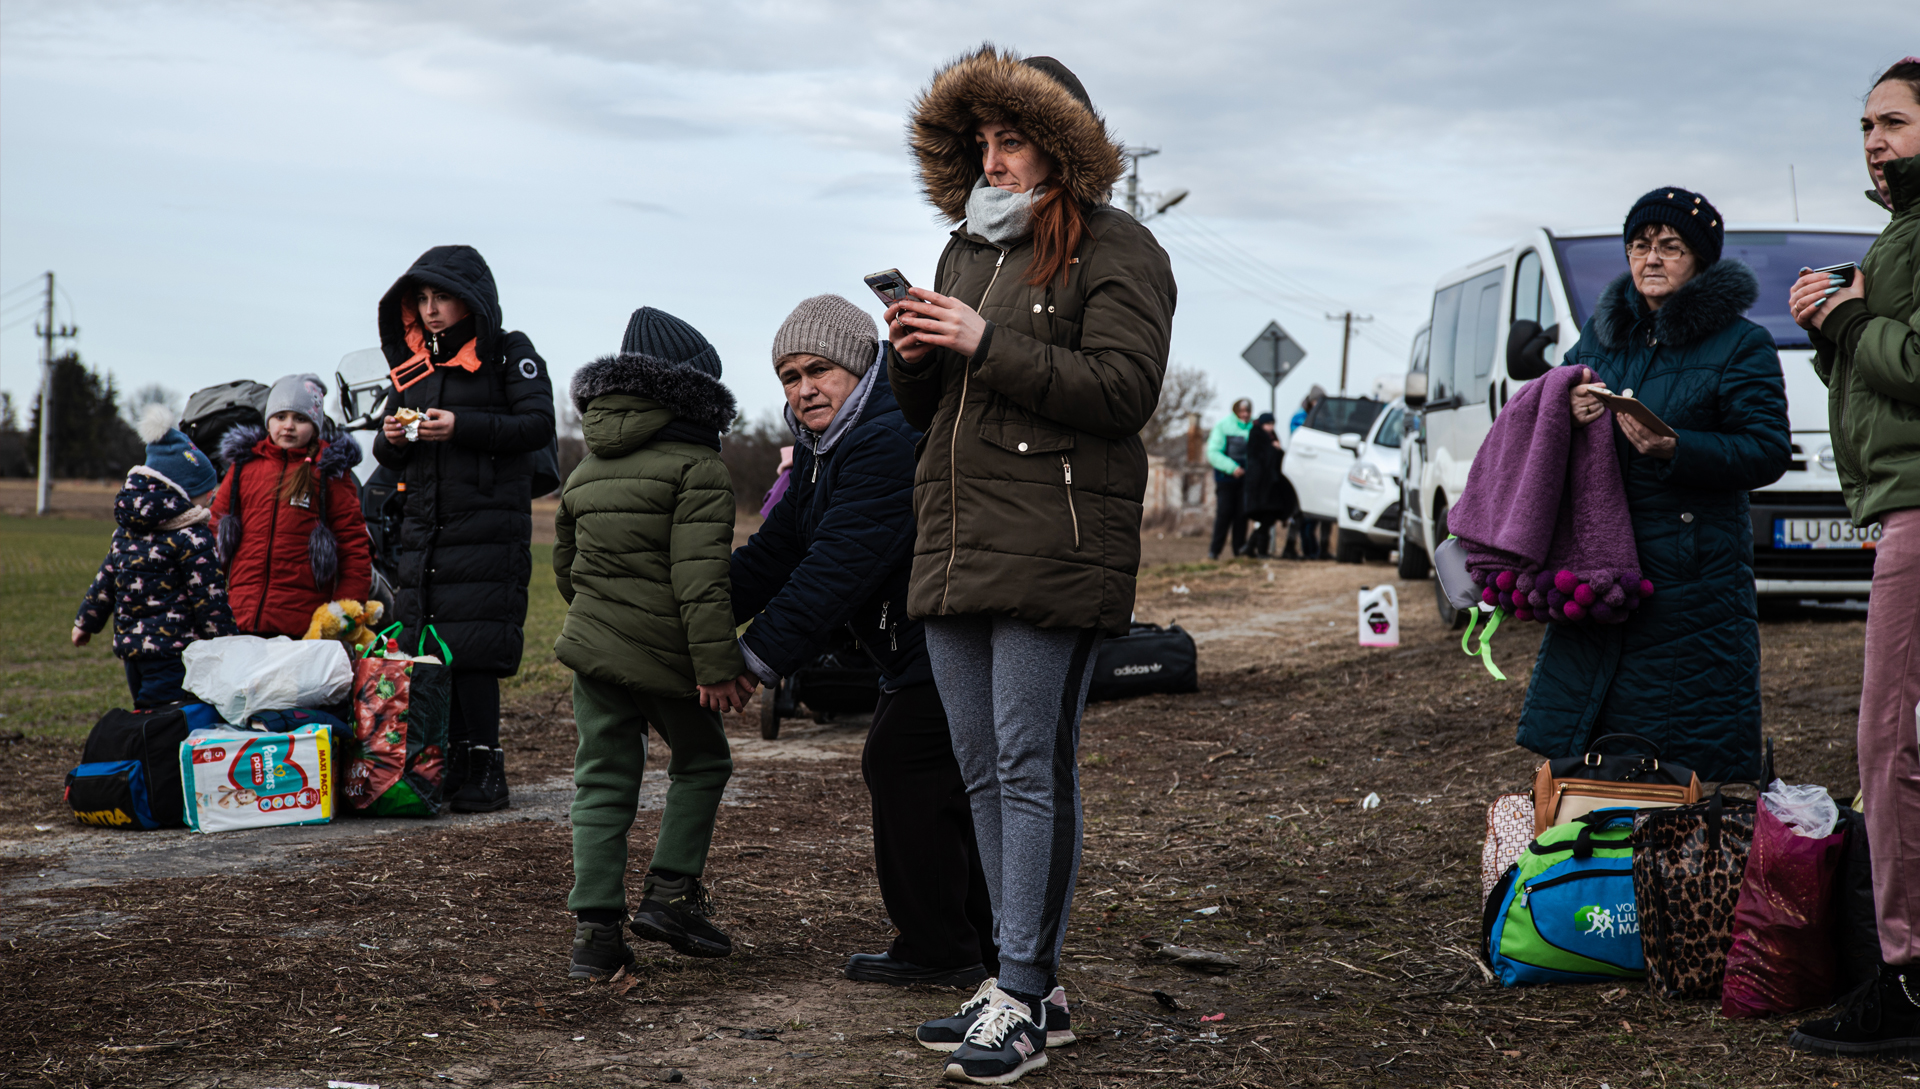 ANP?Hollandse Hoogte/Martin Bruining - Oekraïnse vluchtelingen wachten aan de Poolse kant van de grens op vervoer naar een opvangplek elders in Europa.